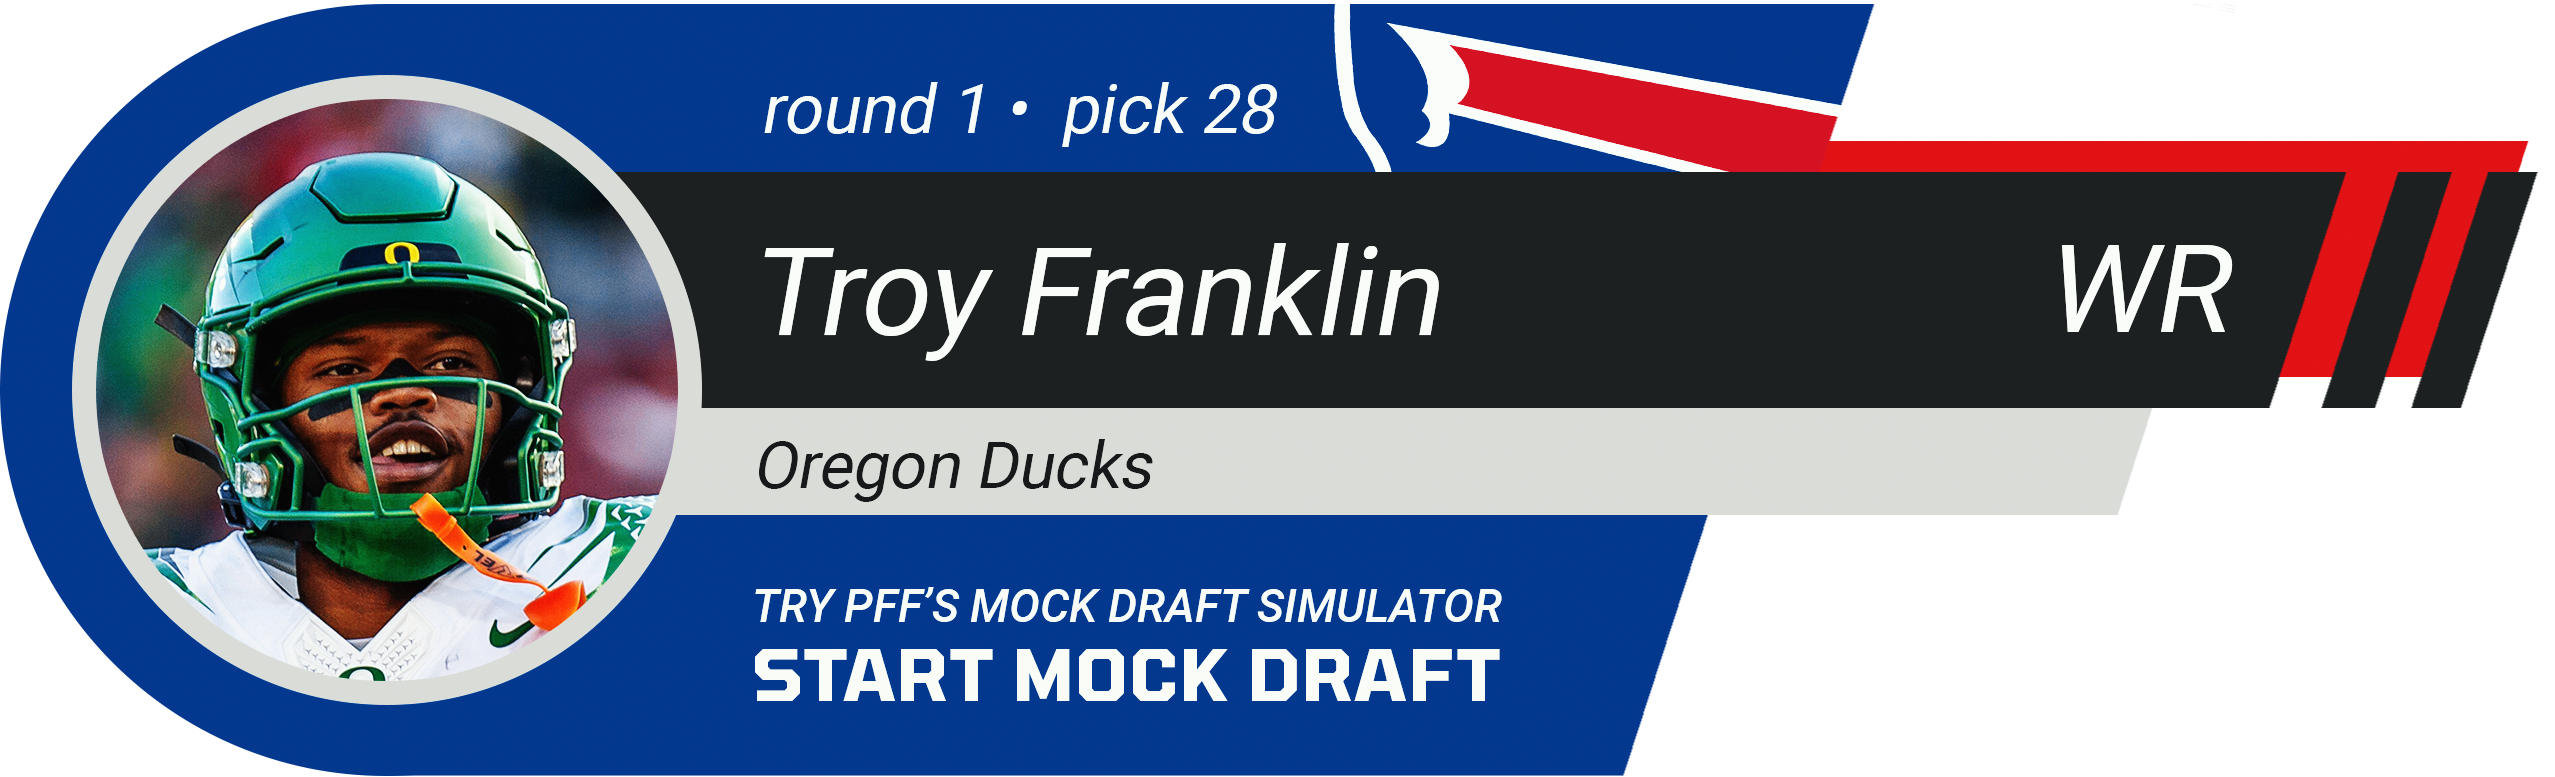 28. Buffalo Bills: WR Troy Franklin, Oregon